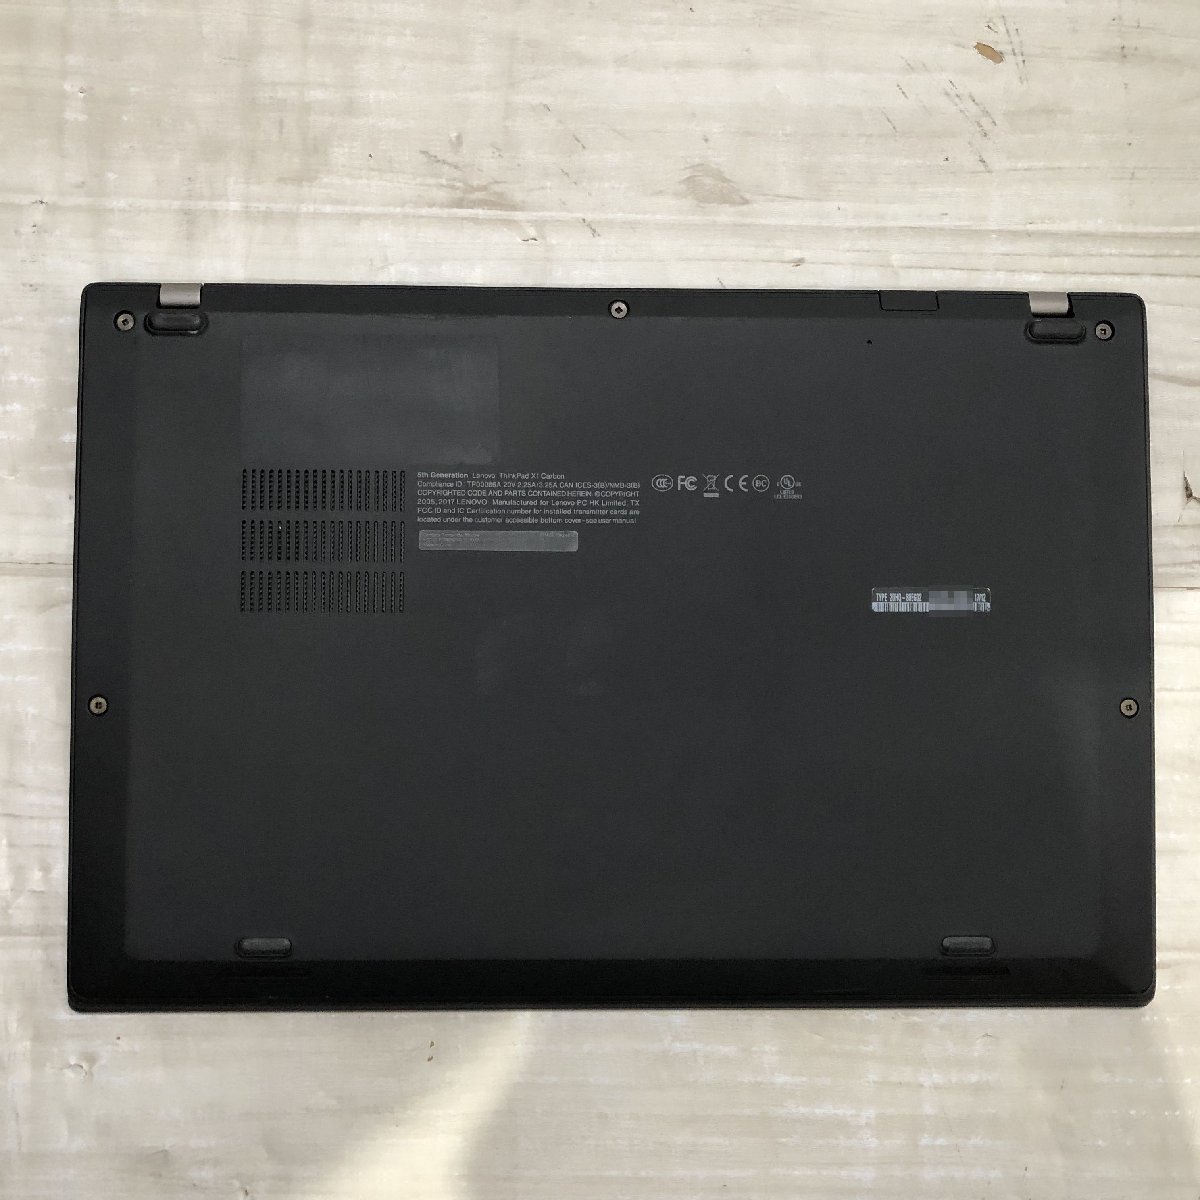 【難あり】 Lenovo ThinkPad X1 Carbon 20HQ-S0EG02 Core i7 7600U 2.80GHz/16GB/256GB(NVMe) 〔A0402〕_画像10